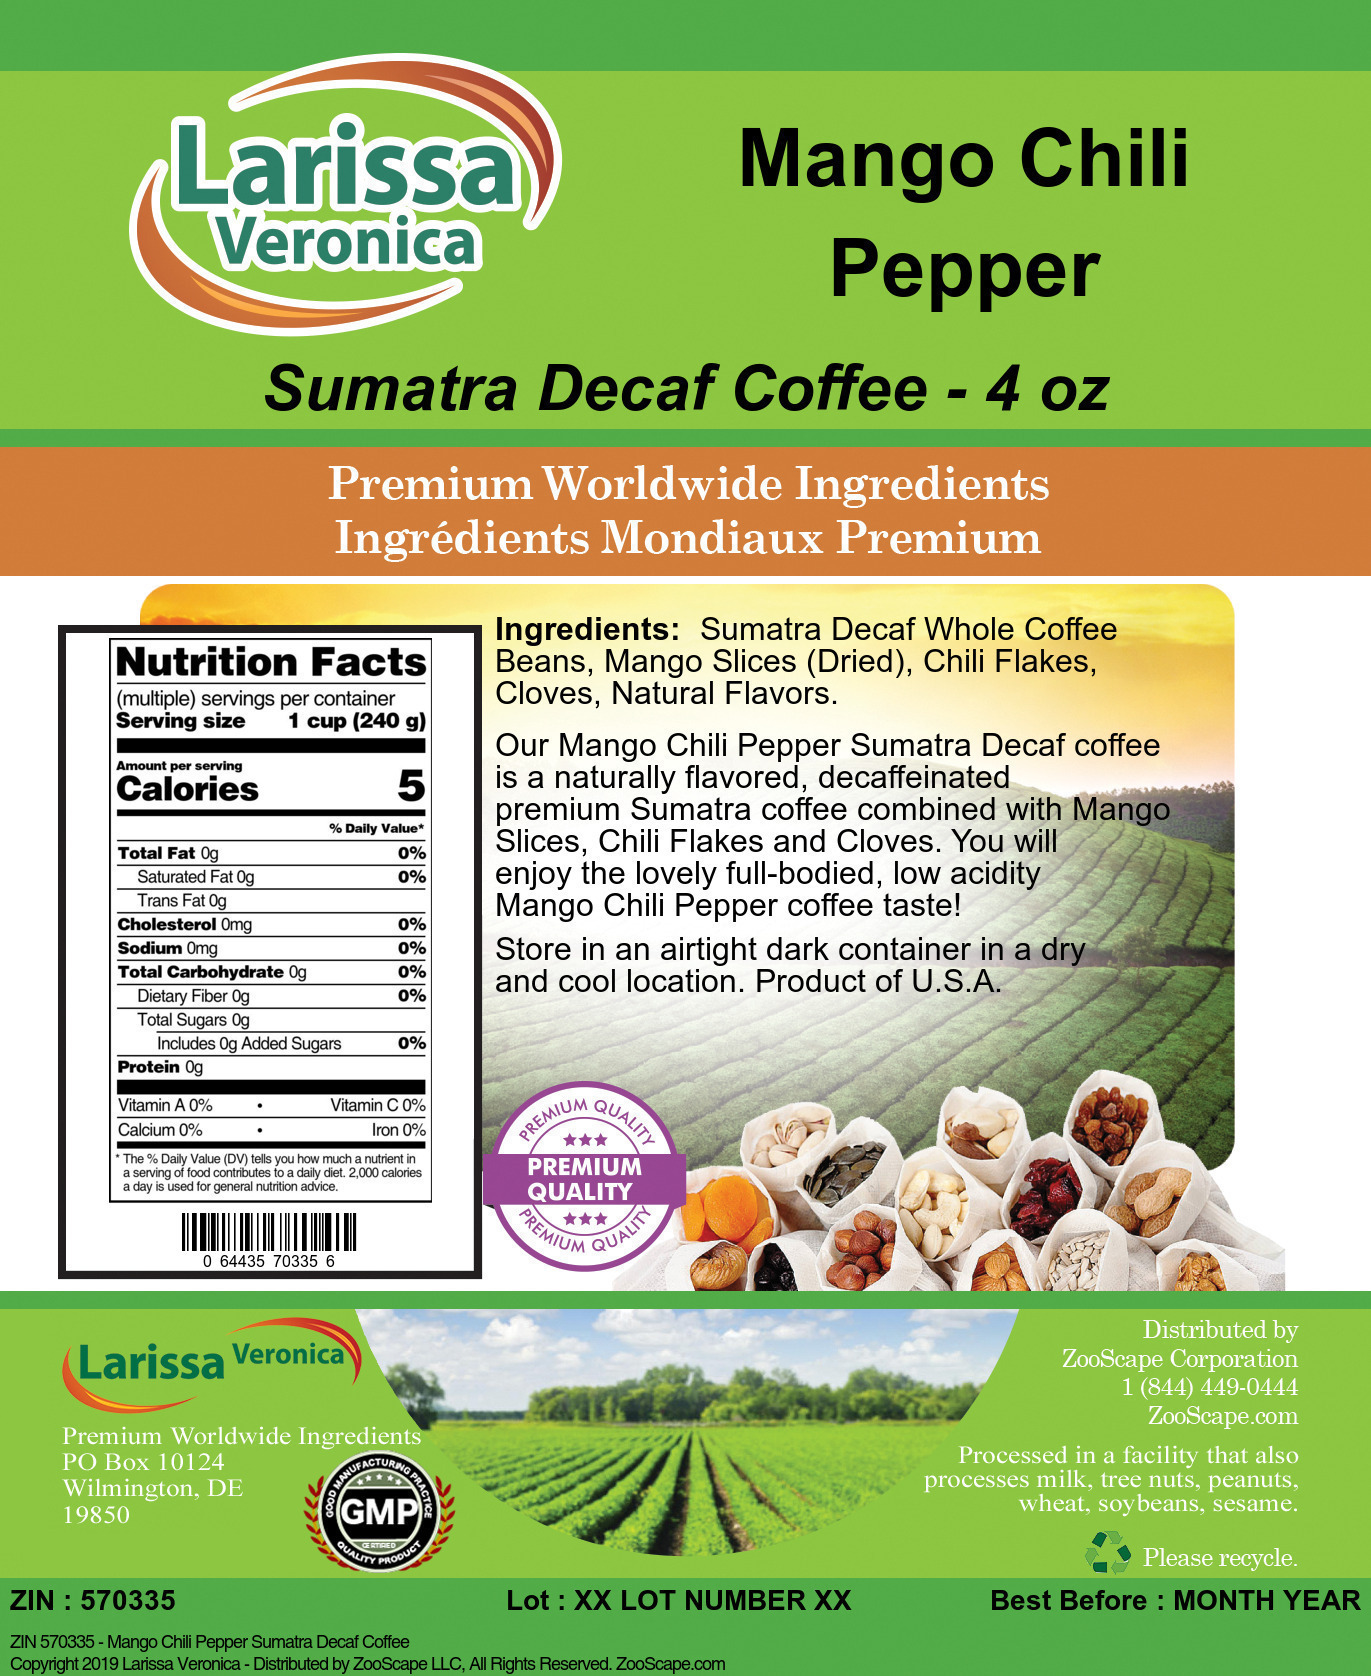 Mango Chili Pepper Sumatra Decaf Coffee - Label